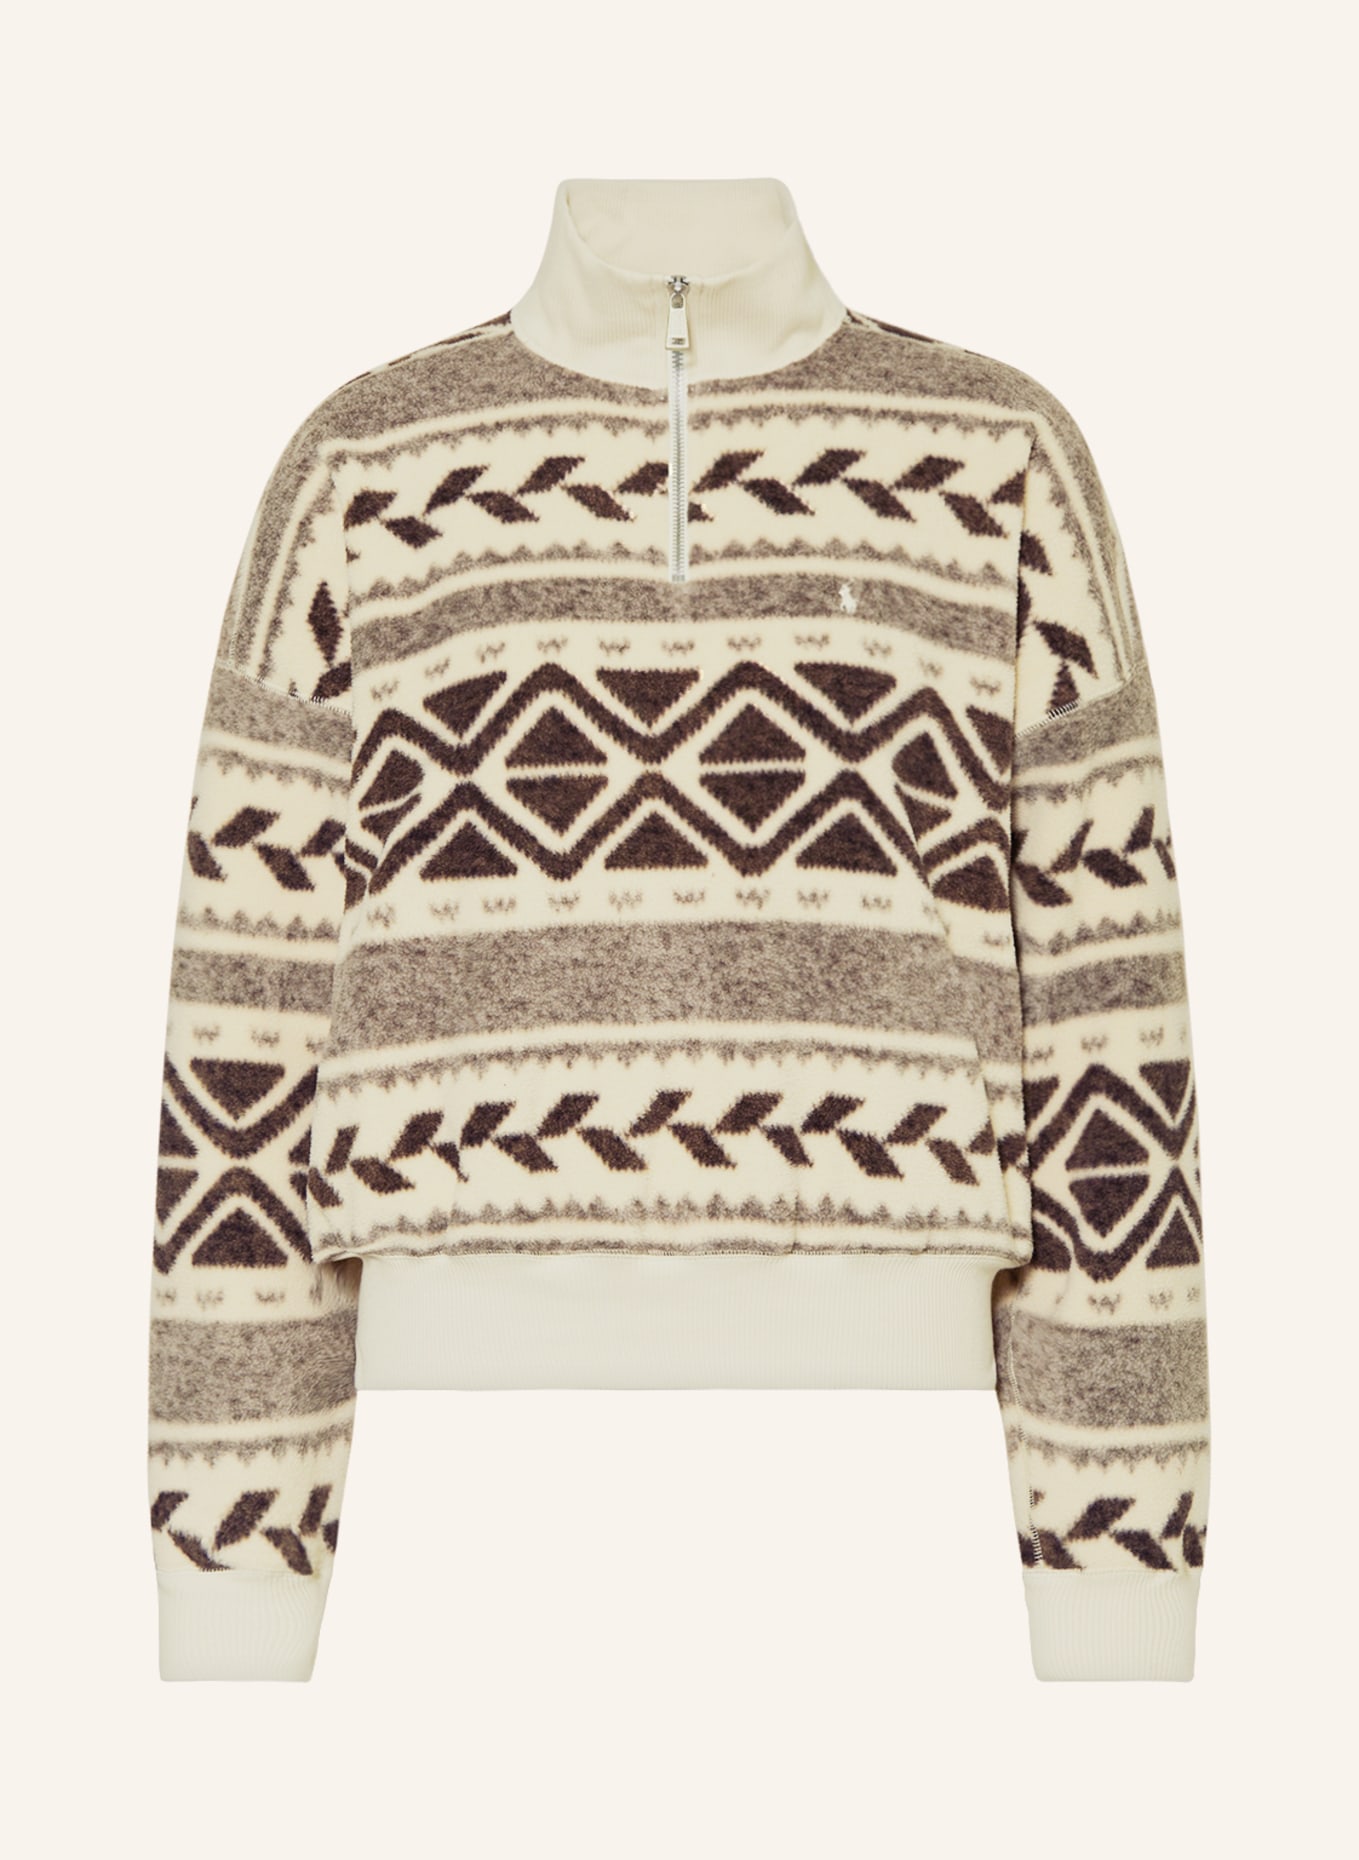 POLO RALPH LAUREN Fleece half-zip sweater, Color: CREAM/ BROWN/ GRAY (Image 1)